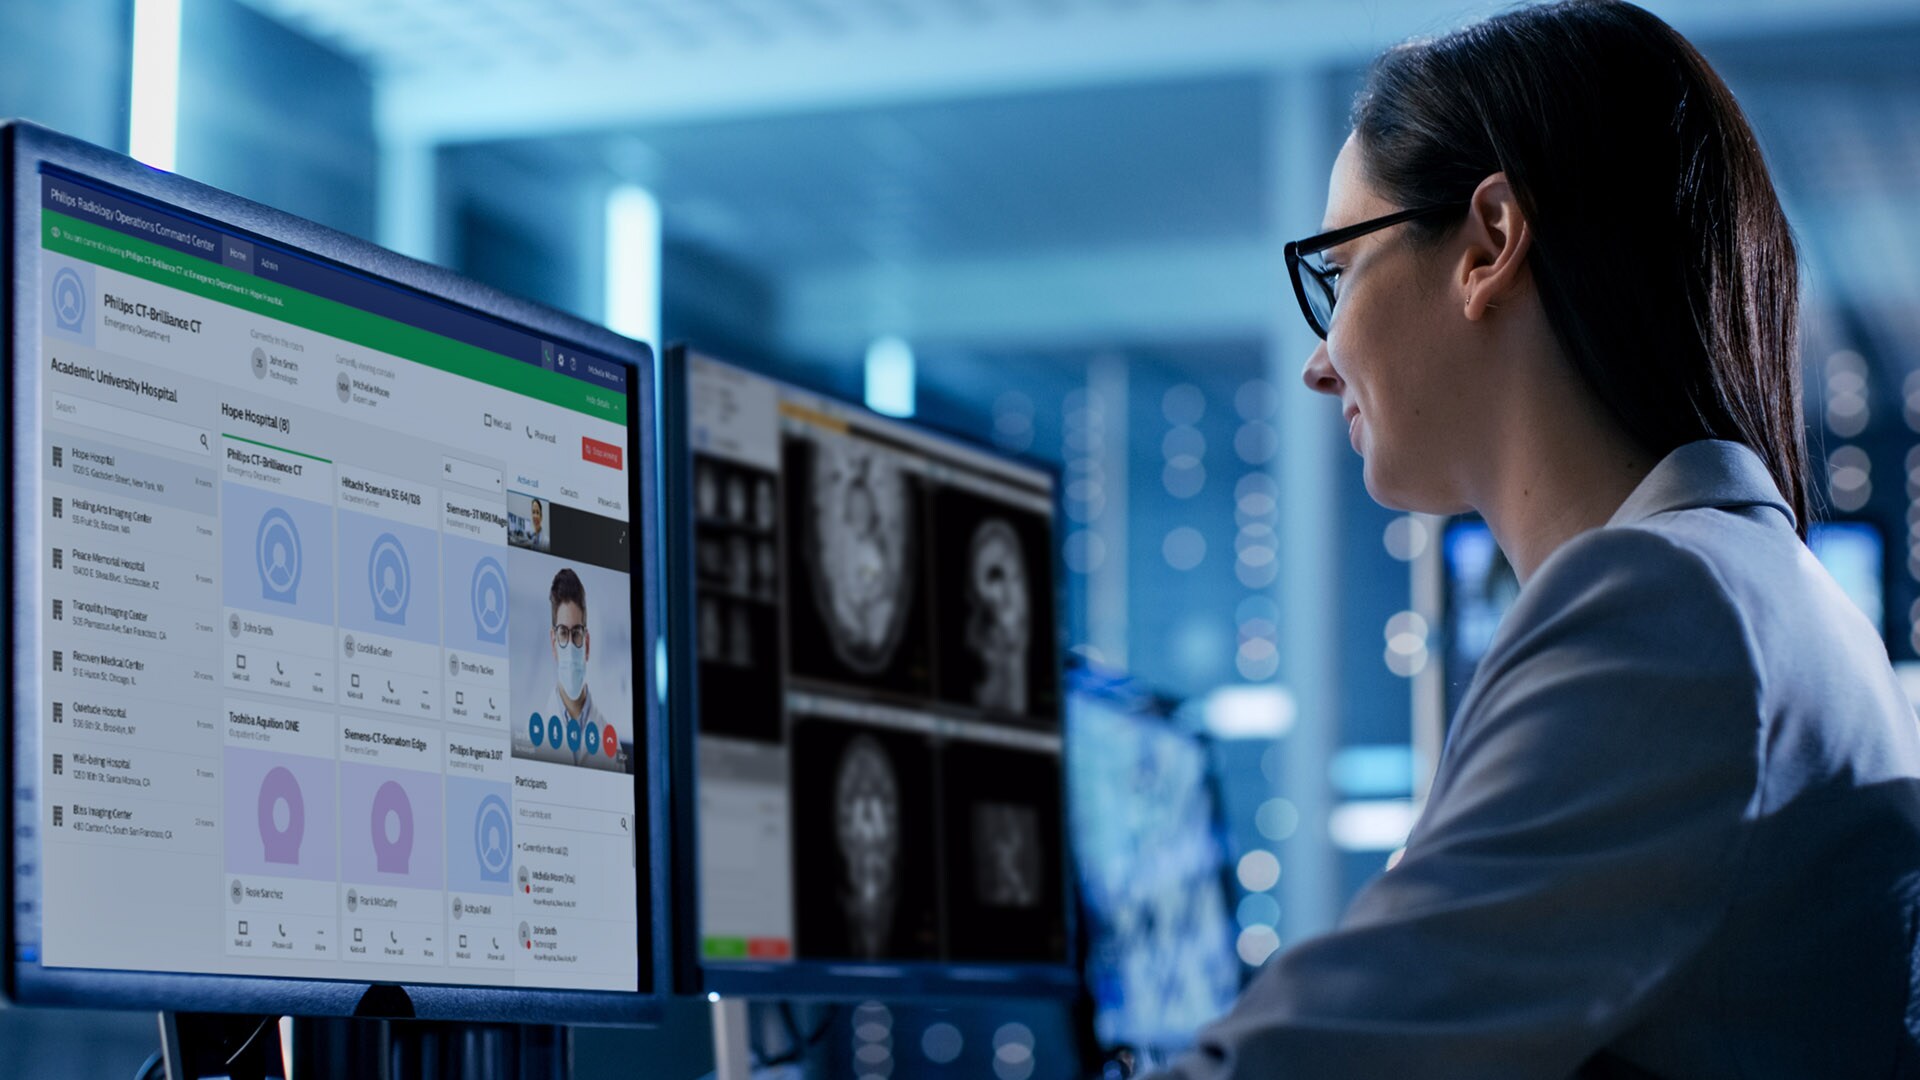 Philips cải tiến các hệ thống chẩn đoán và các giải pháp tối ưu hóa quy trình làm việc ứng dụng trí tuệ nhân tạo (AI) tại RSNA 2022